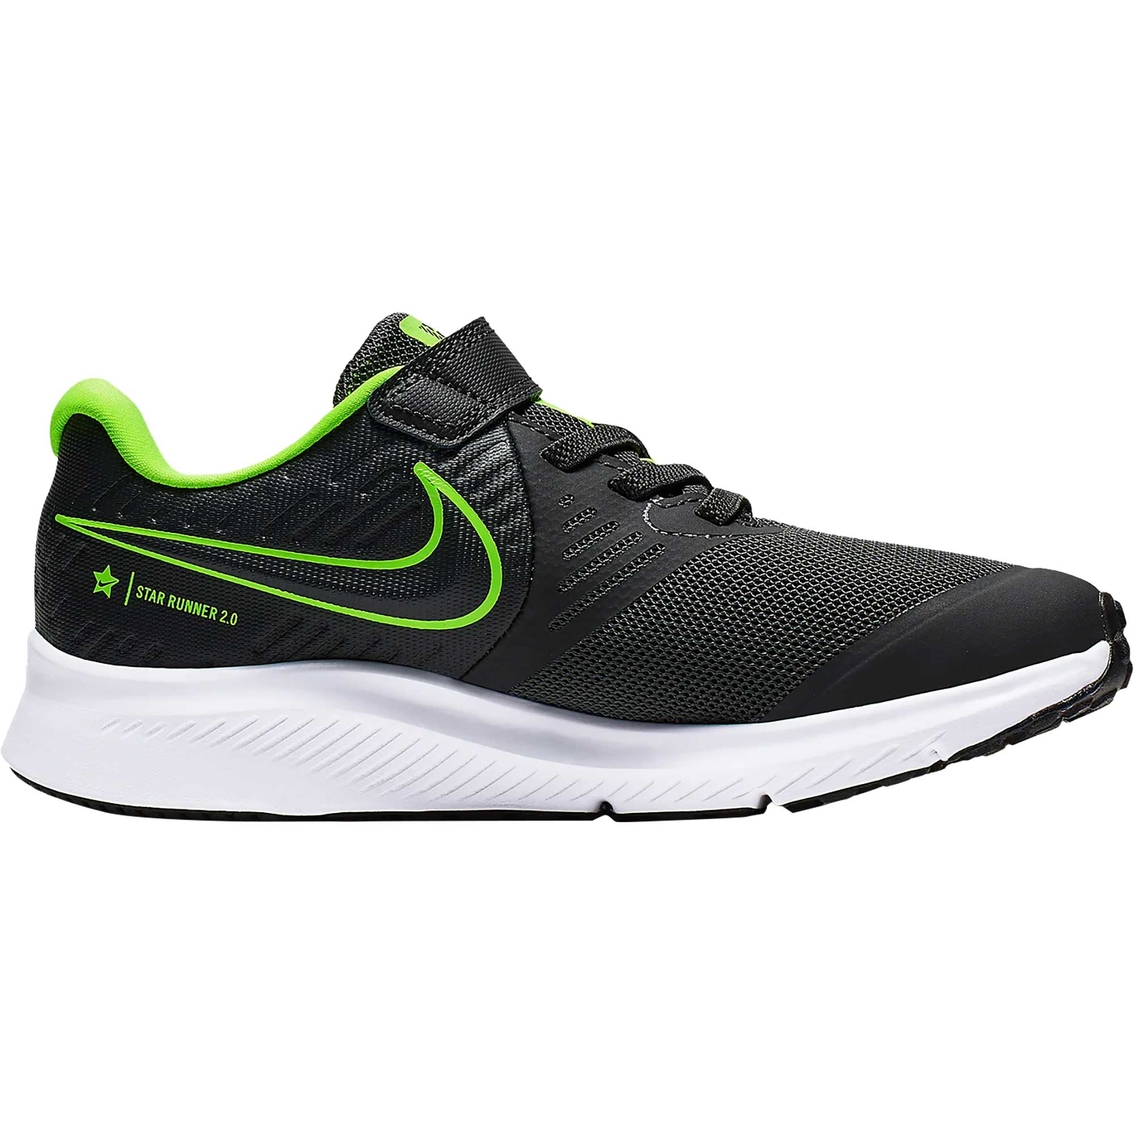 Nike Pre School Boys Star Runner 2 Running Shoes | Children's Athletic ...